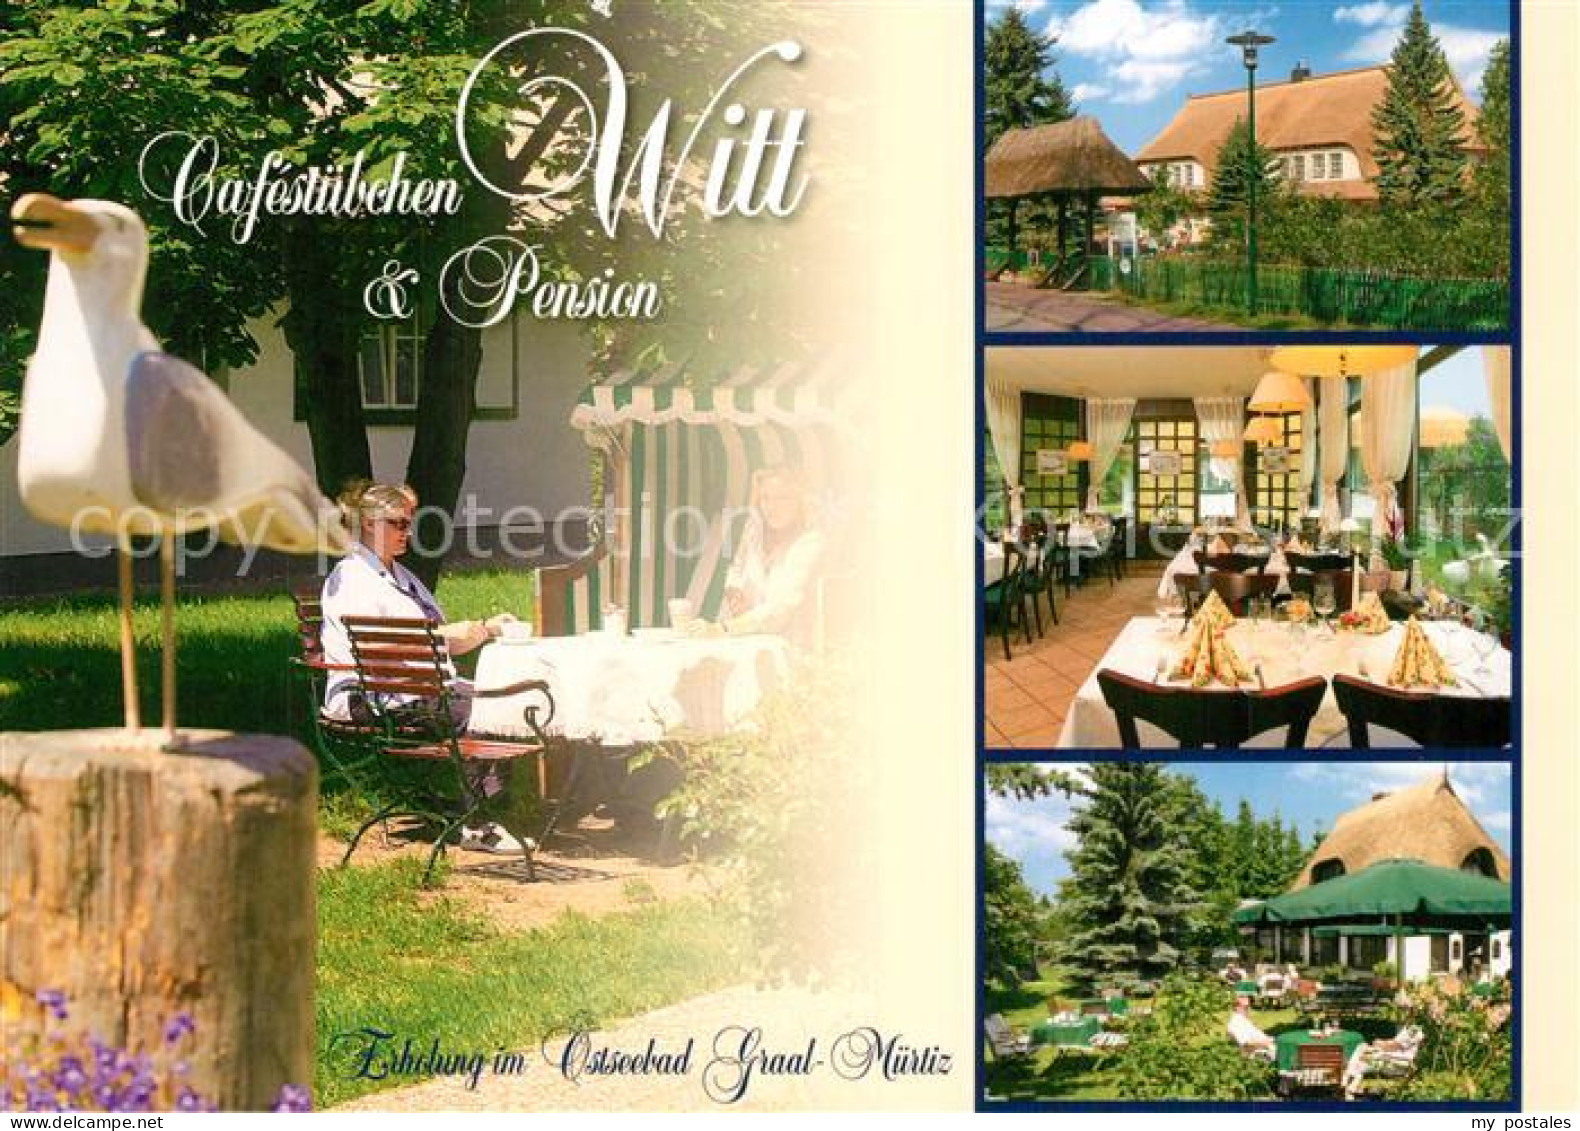 73613910 Graal-Mueritz Ostseebad Cafestuebchen Witt Restaurant Pension Graal-Mue - Graal-Müritz